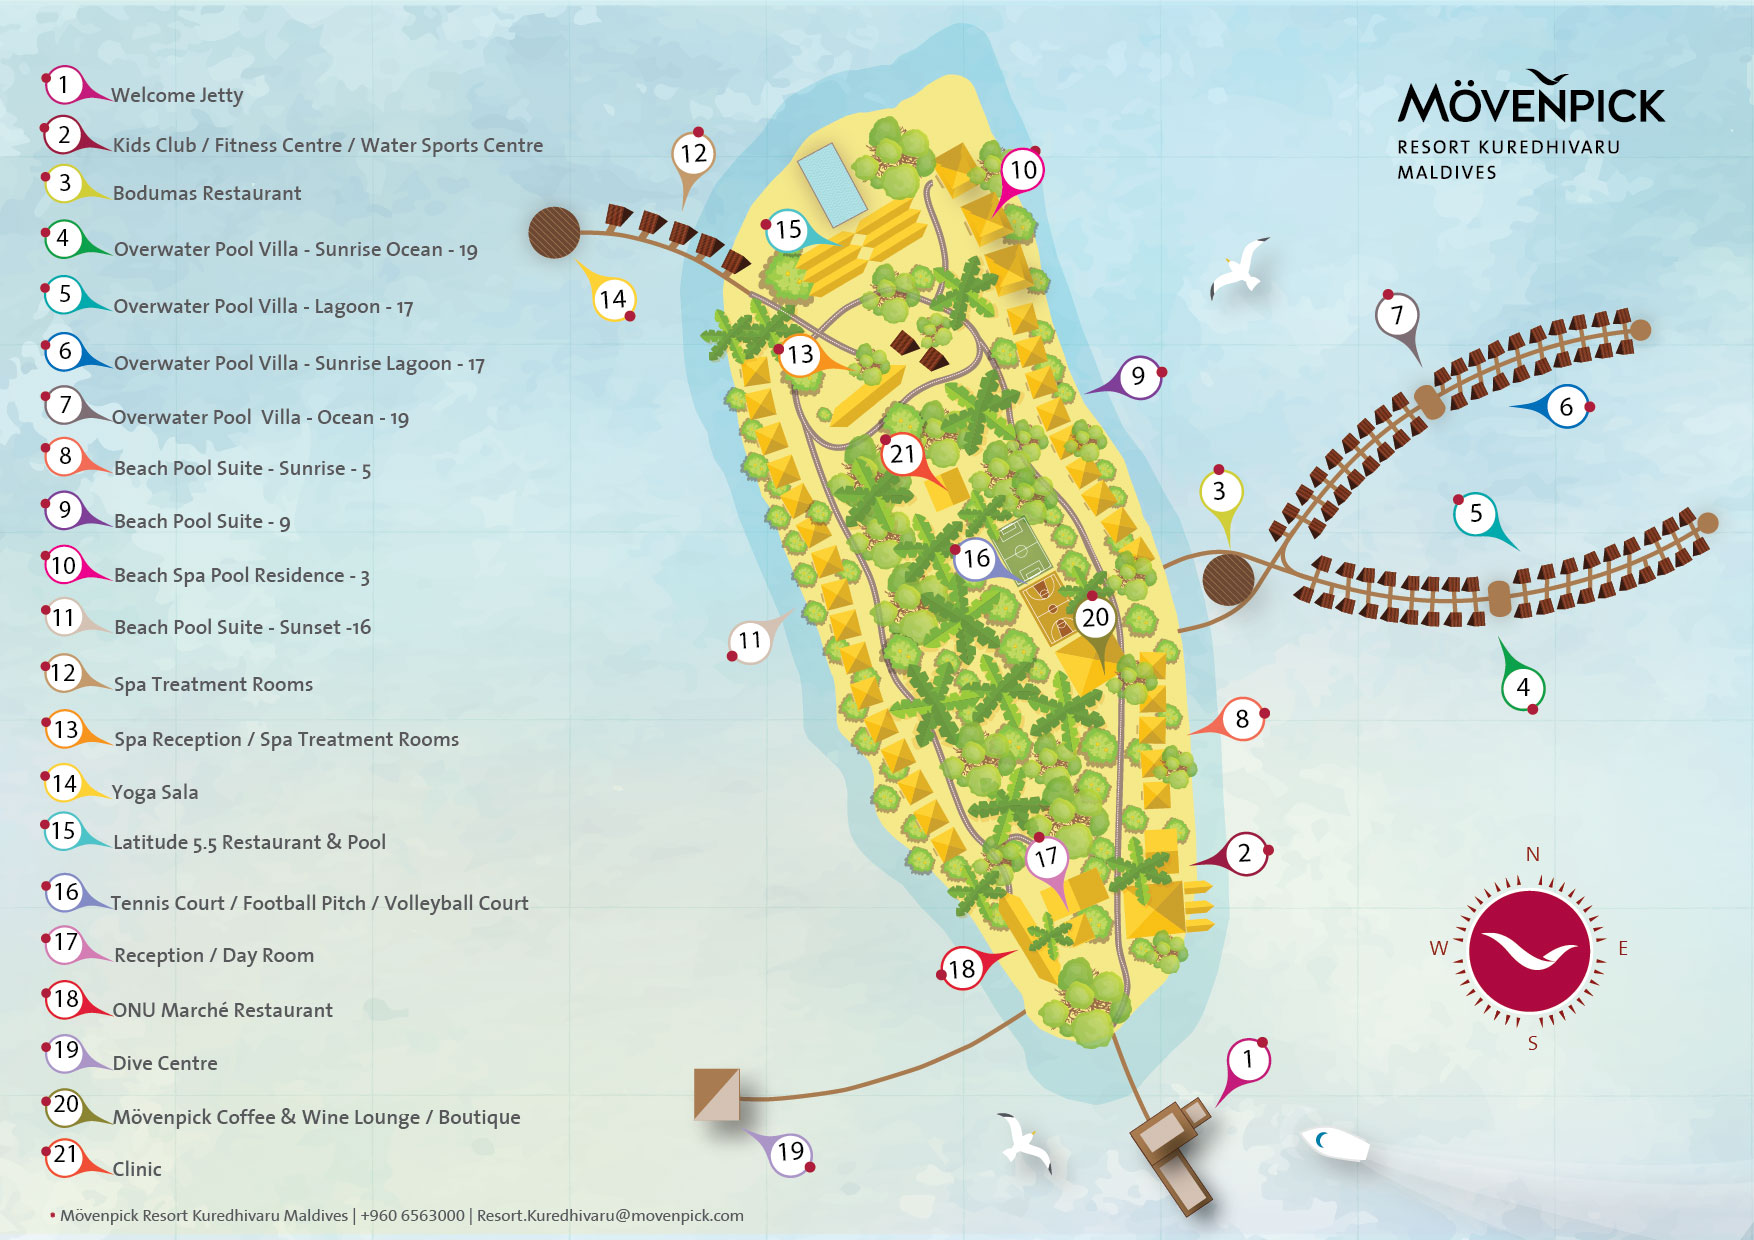 马尔代夫 莫凡彼|瑞享岛 Movenpick Resort Kuredhivaru Maldives 平面地图查看